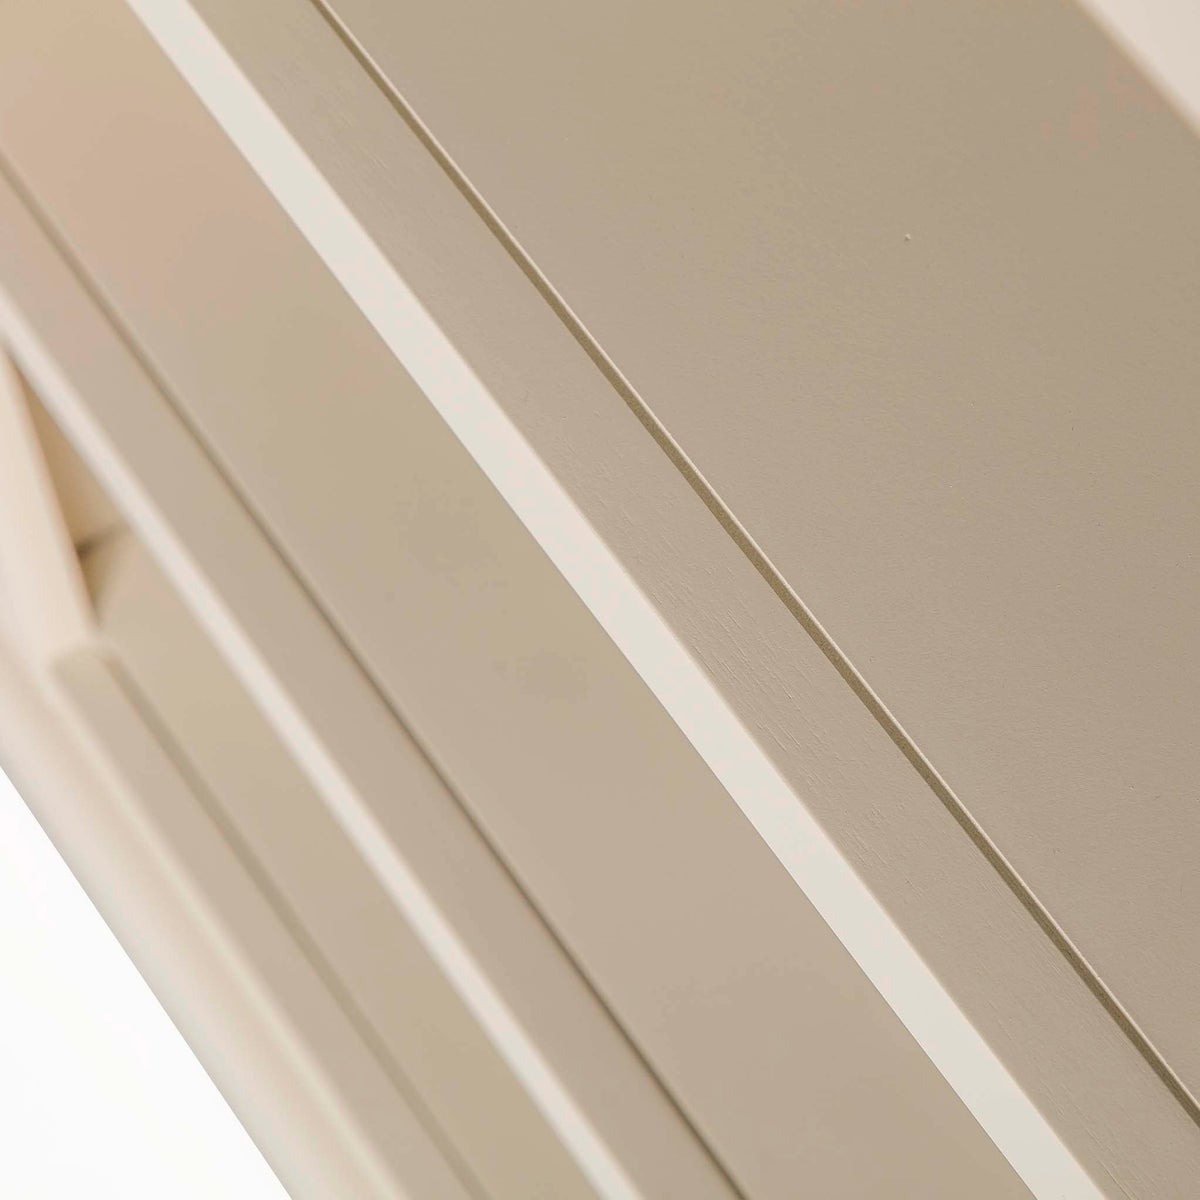 Hove Ivory Large Bookcase - Close up of shelf edges